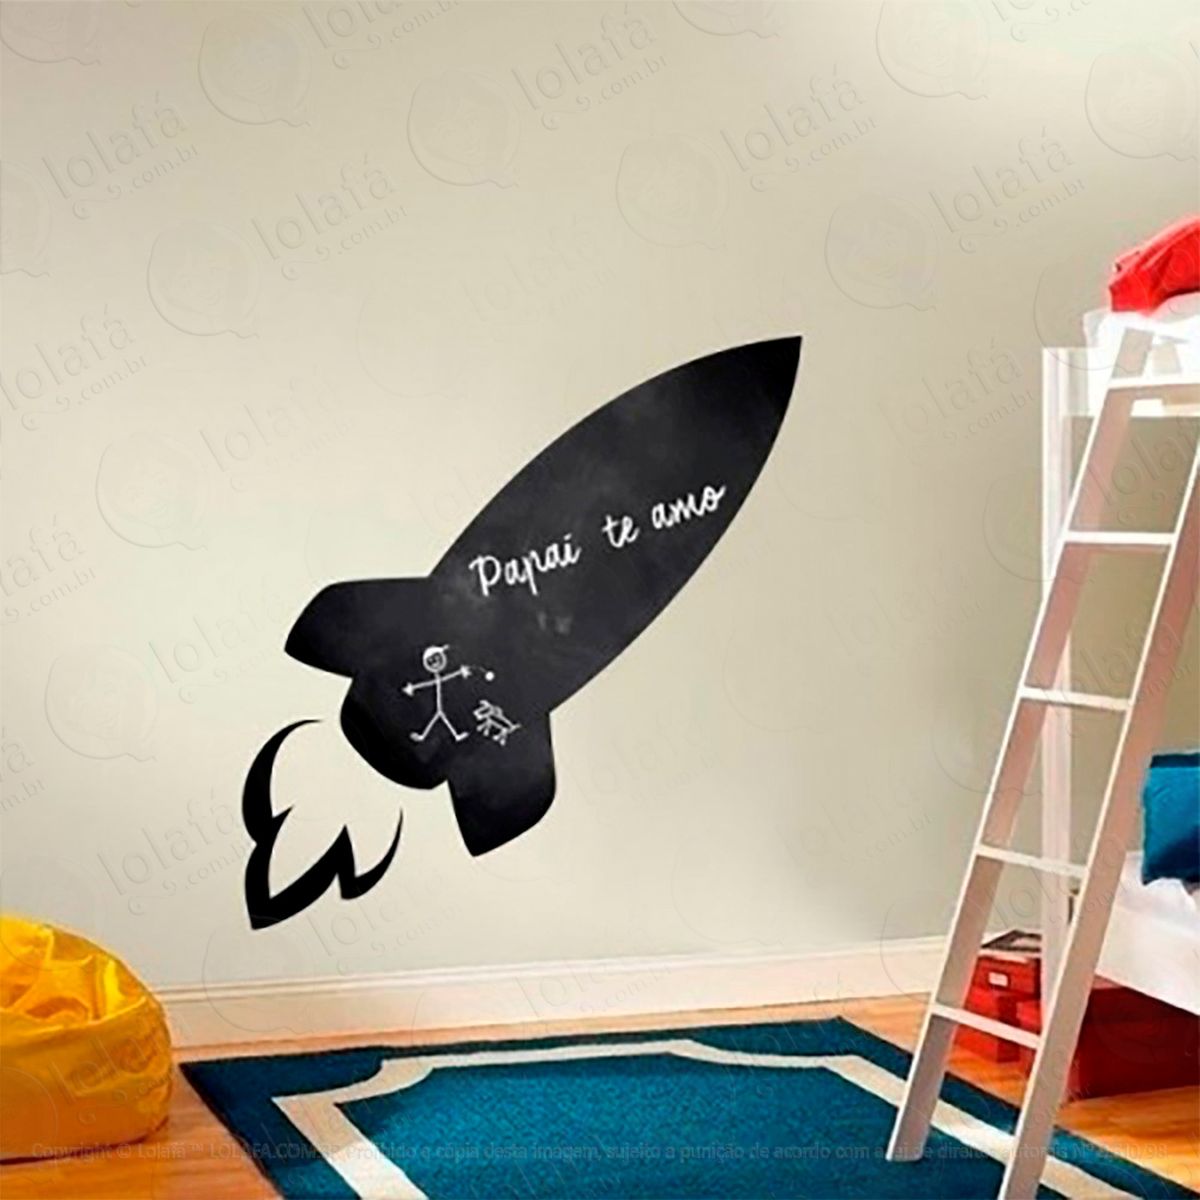 foguete adesivo lousa quadro negro de parede para escrever com giz - mod:43